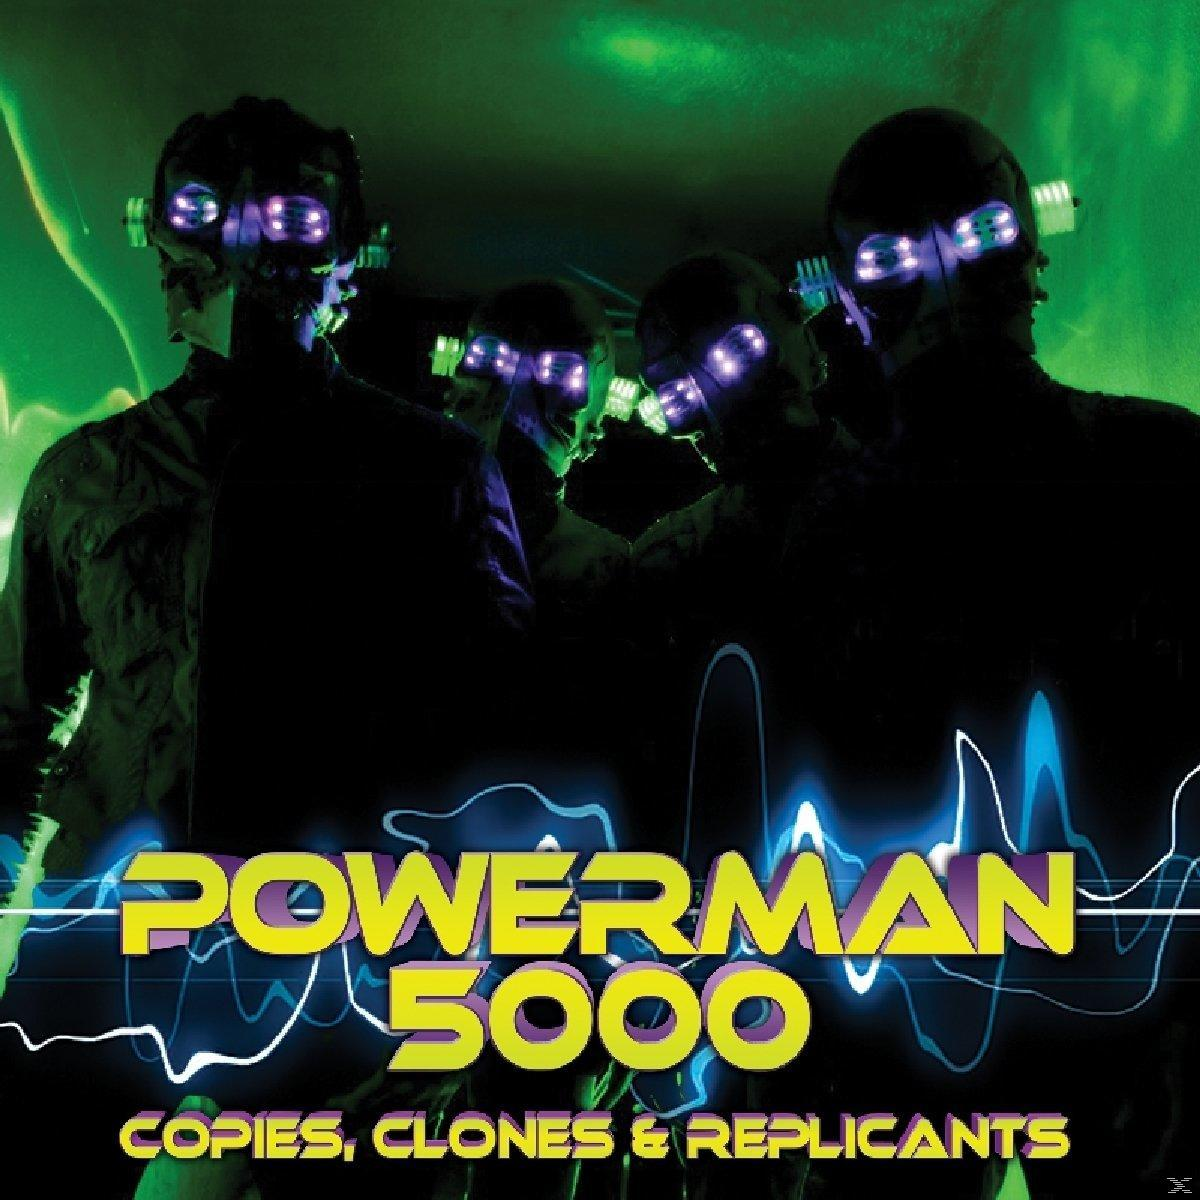 5000 (Vinyl) COPIES Powerman REPLICANTS & CLONES - -